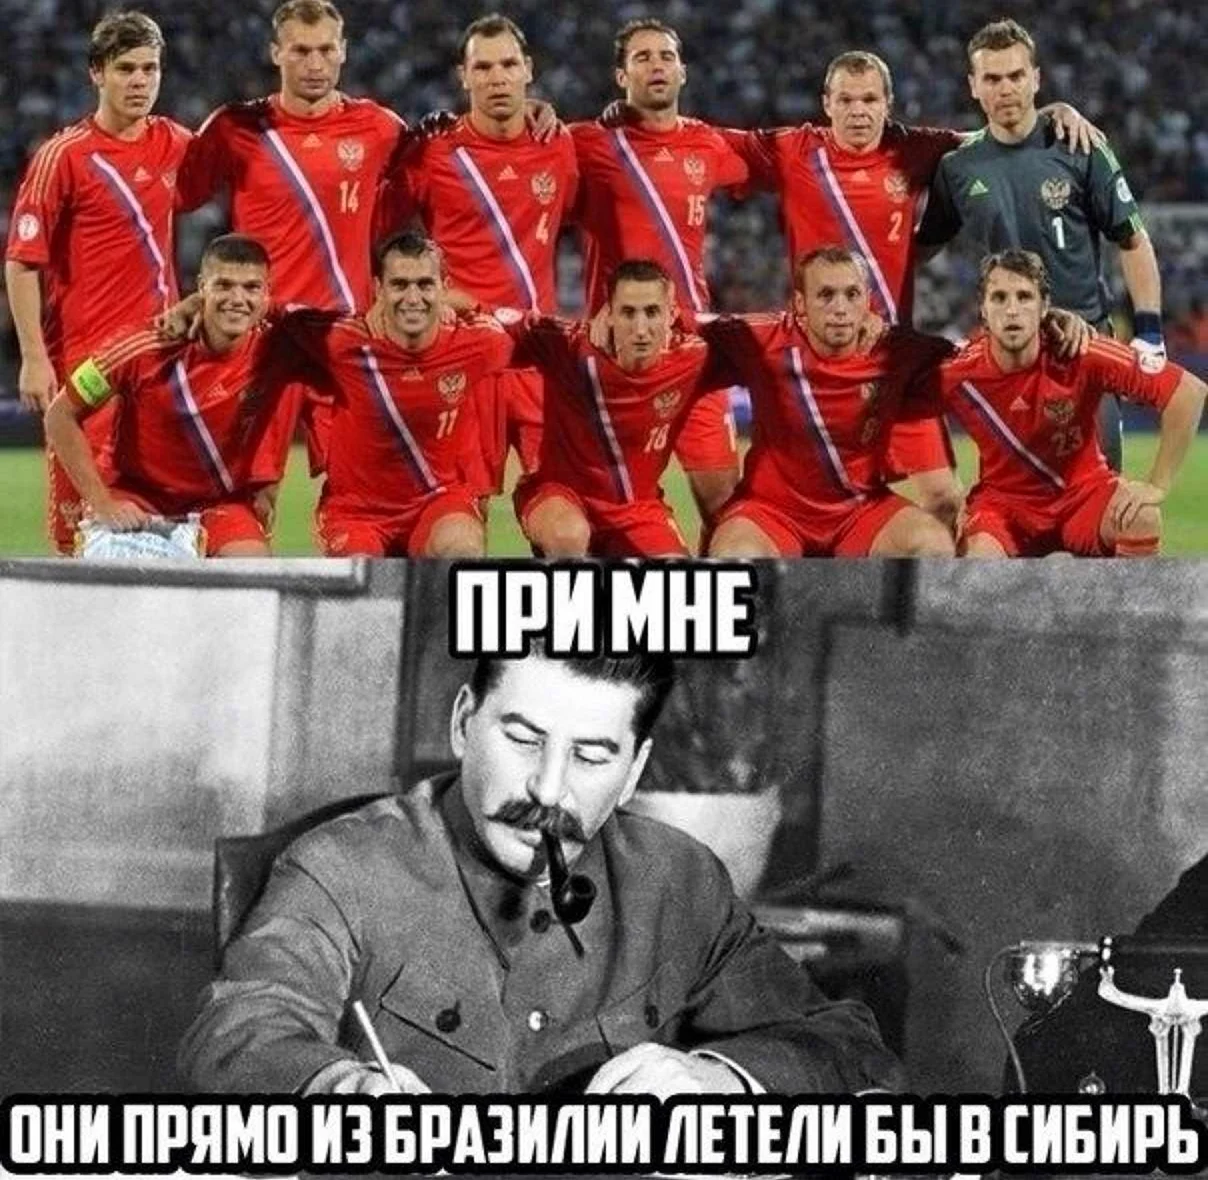 Сталин и сборная России по футболу. Прикольная картинка